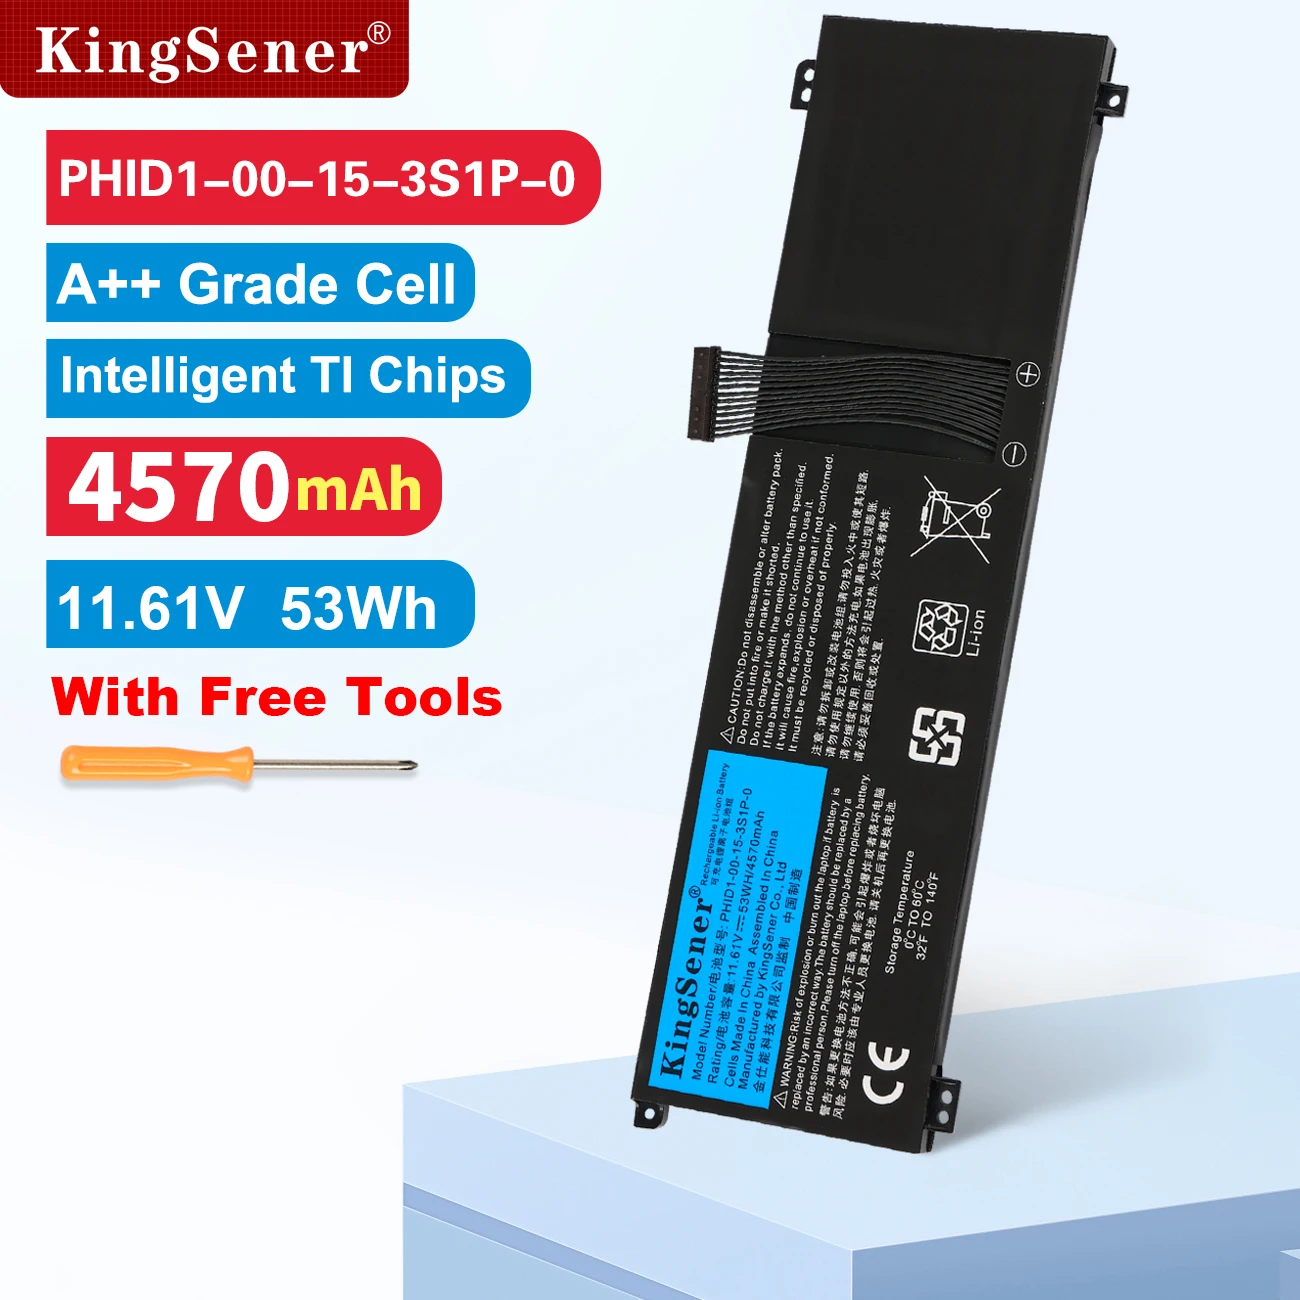 

KingSener 11.61V 53WH PHID1-00-15-3S1P-0 Laptop Battery For Mechrevo F1 For Schenker Vision 14 Adata XPG Xenia 14 Series 4570mAh